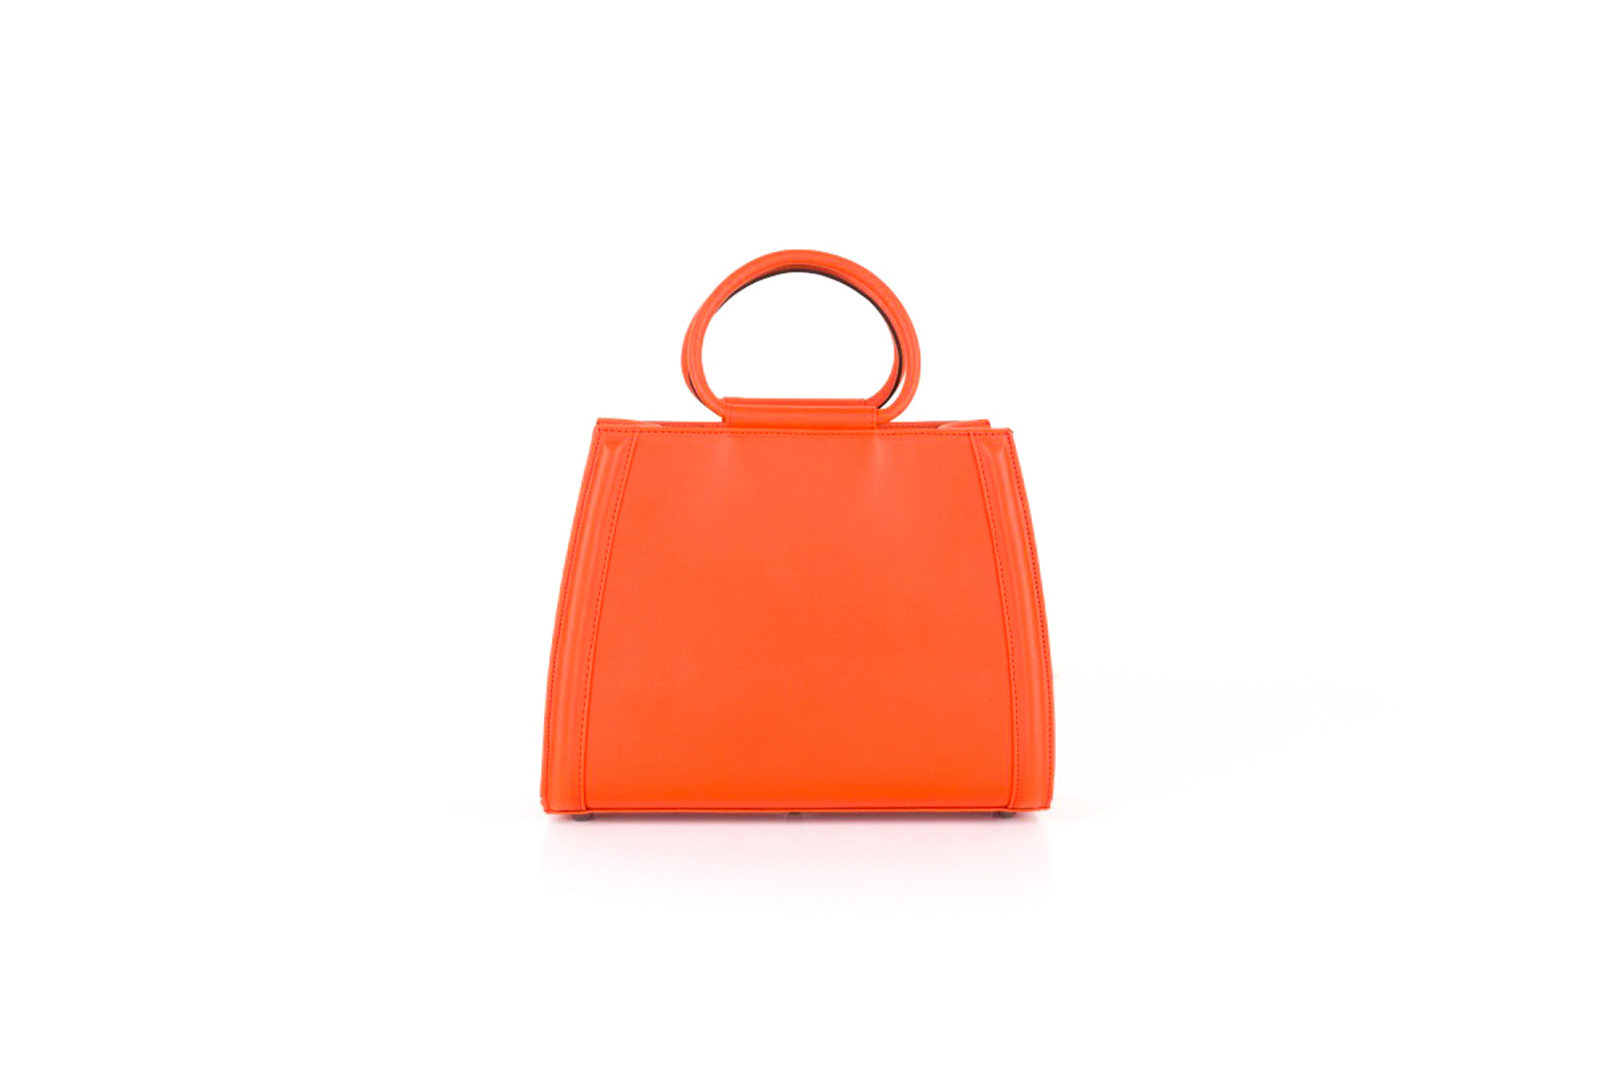 Orange handbag